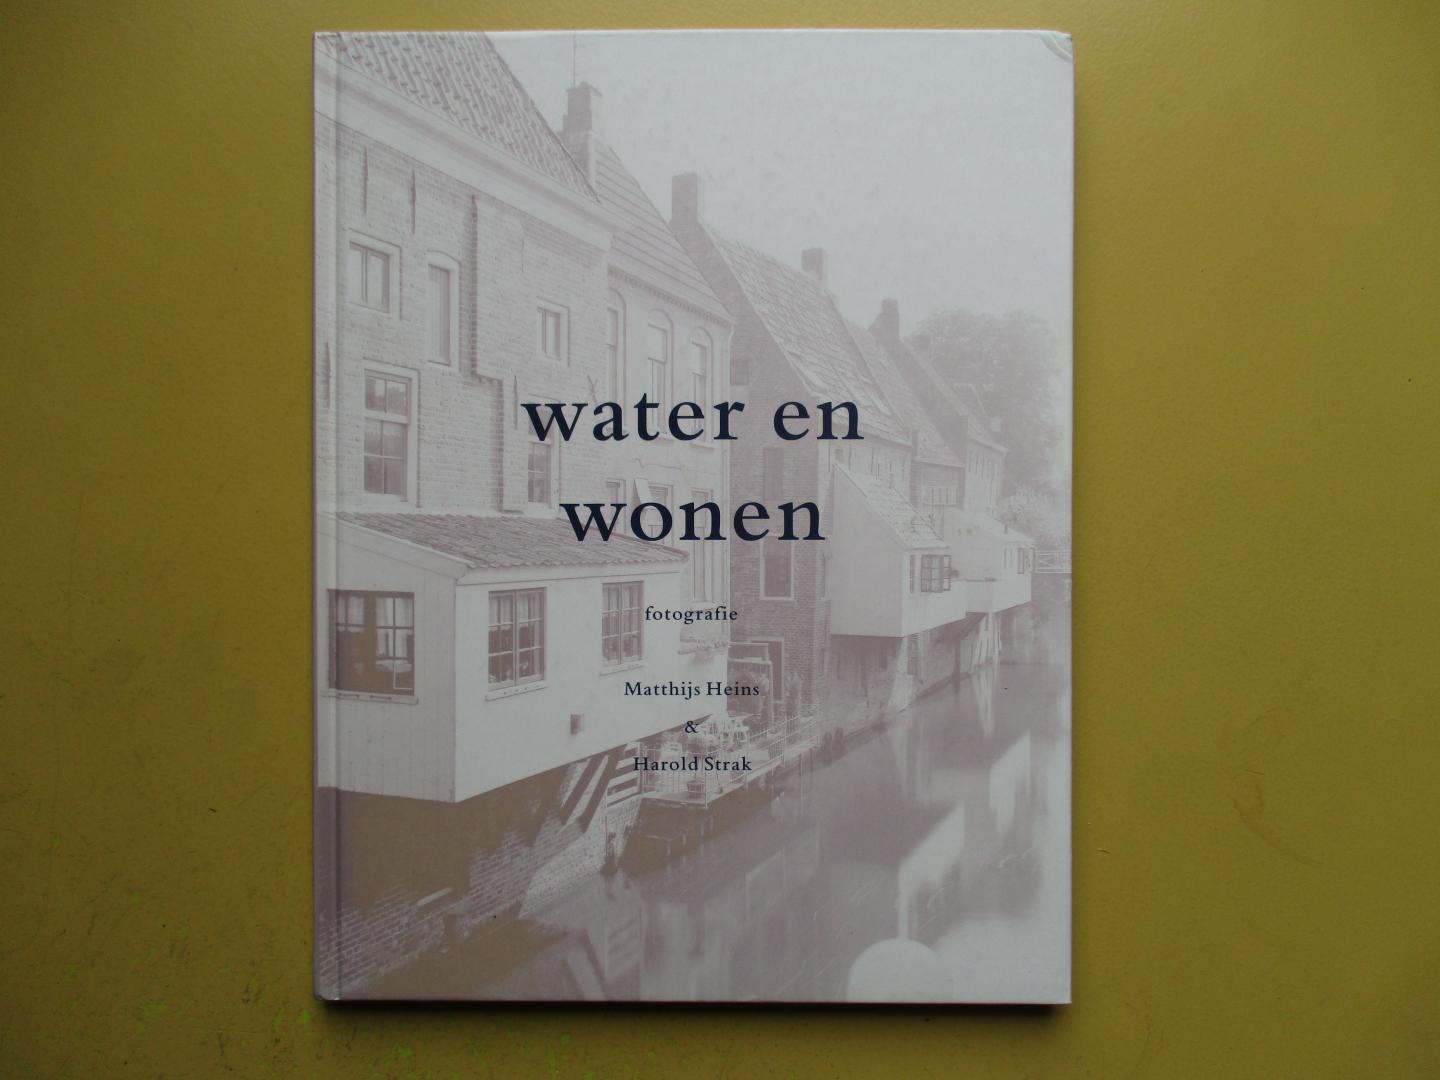 Jonge, prof. dr. Derk de - Water & wonen in nederland / druk 1